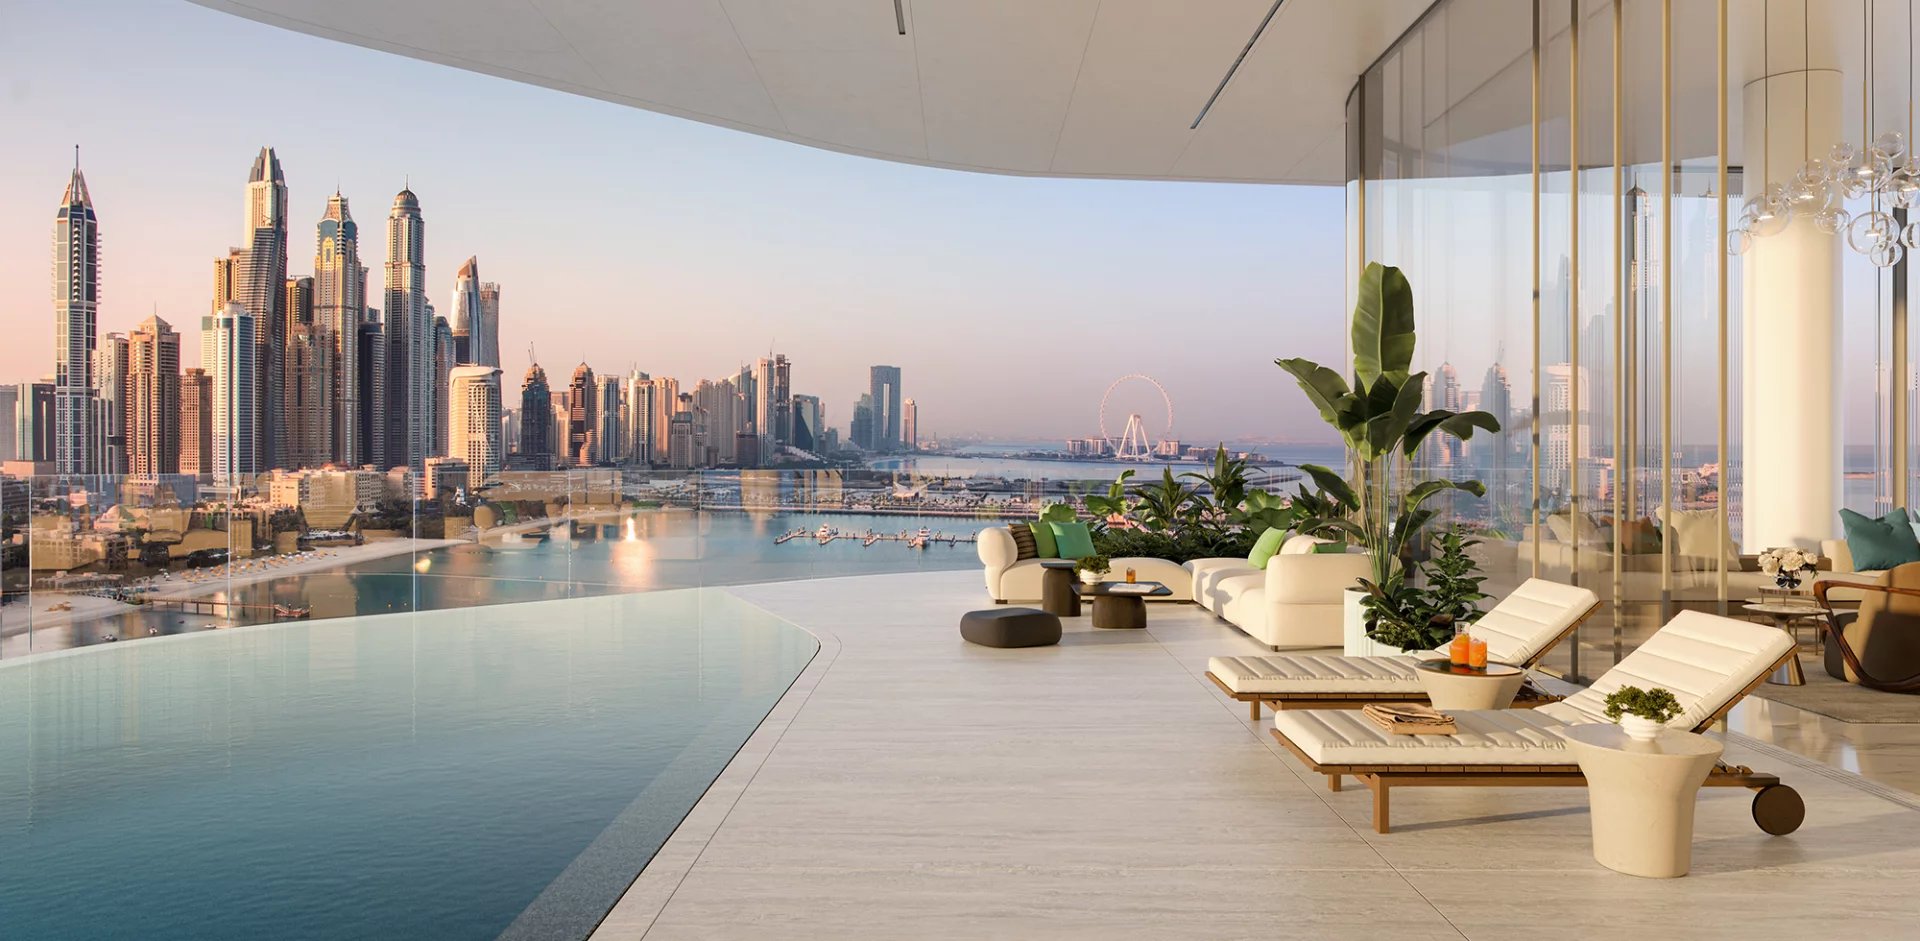 4 Bed, 5 Bath, ApartmentFor Sale, Palm Jumeirah, Dubai